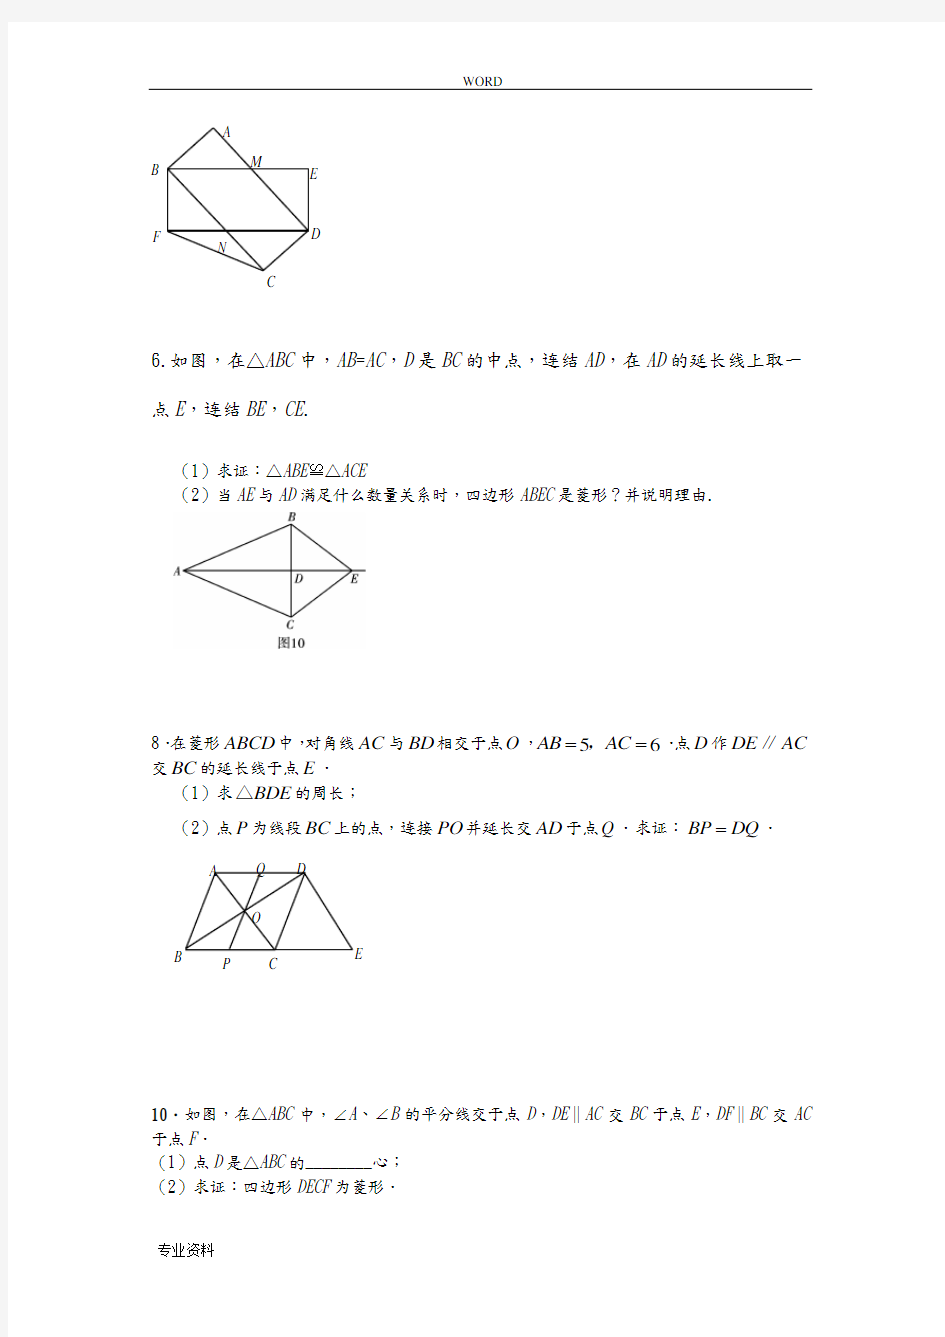 几何证明题_特殊平行四边形